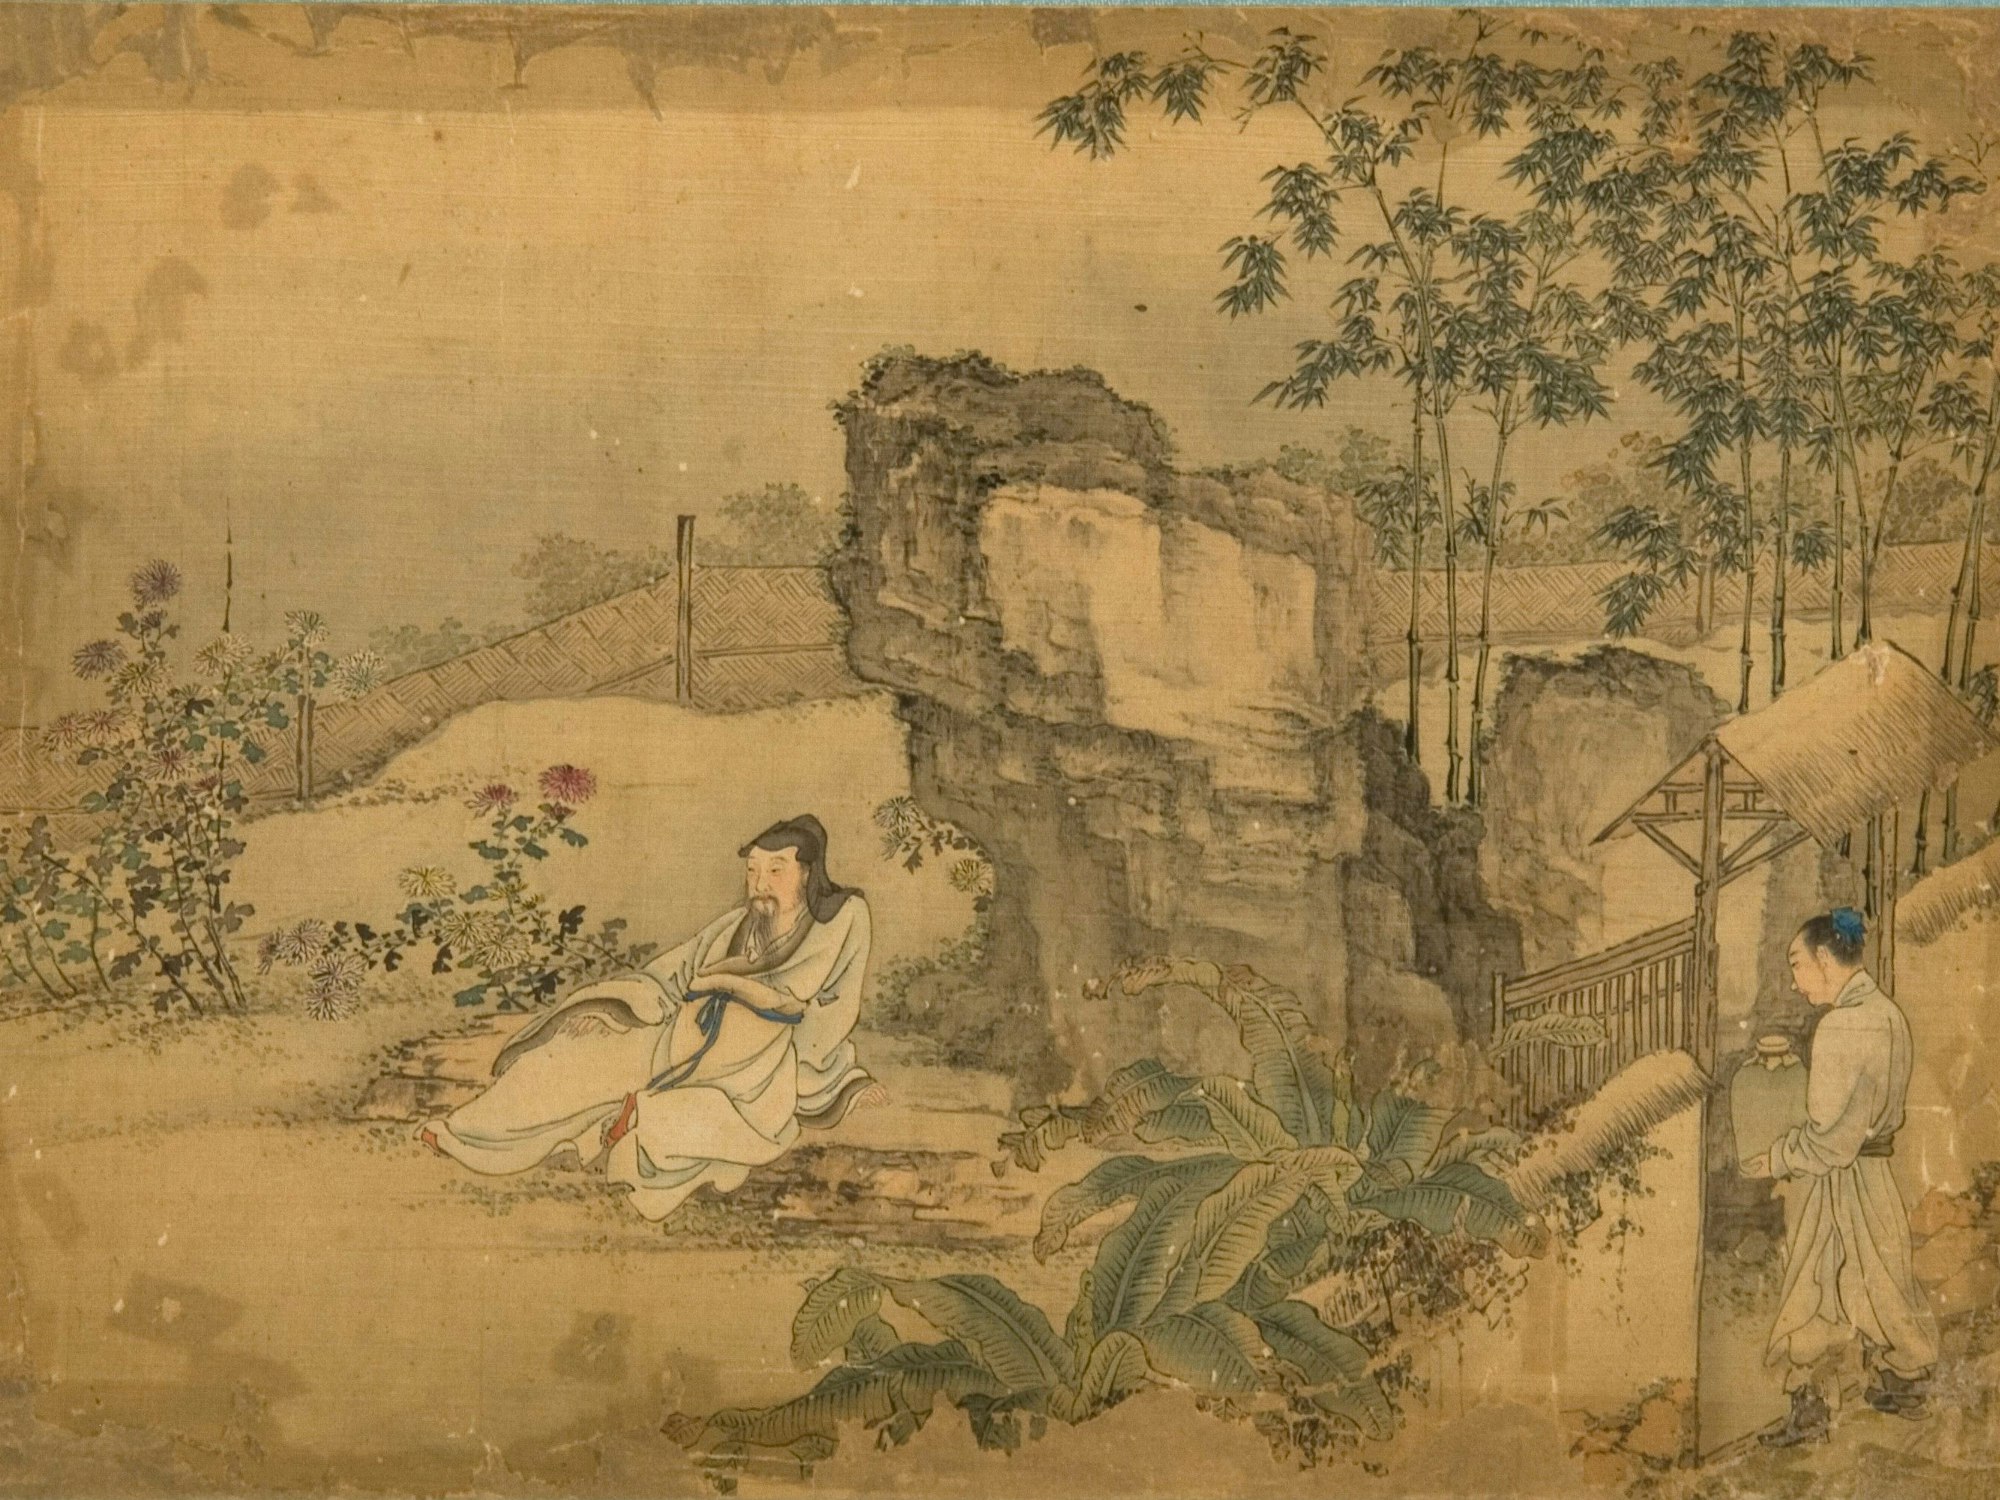 Der Dichter Tao Yuanming liegt auf einem Stein in seinem Garten und lässt sich Wein bringen.